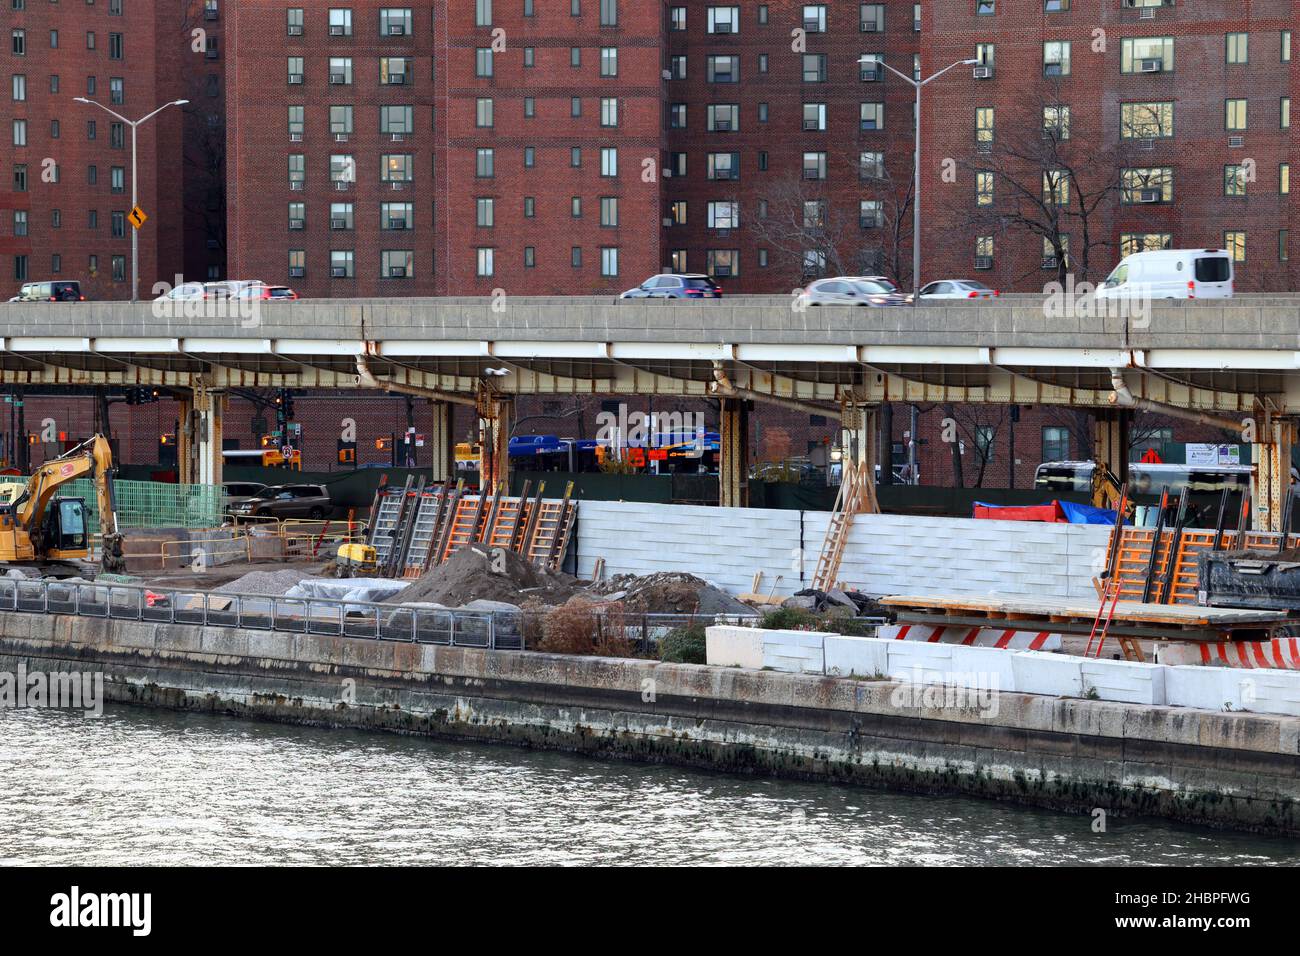 Im Stuyvesant Cove Park entlang des East River Greenway und der Uferpromenade in New York, NY, werden Hochwassermauern an der Ostseite errichtet. Stockfoto